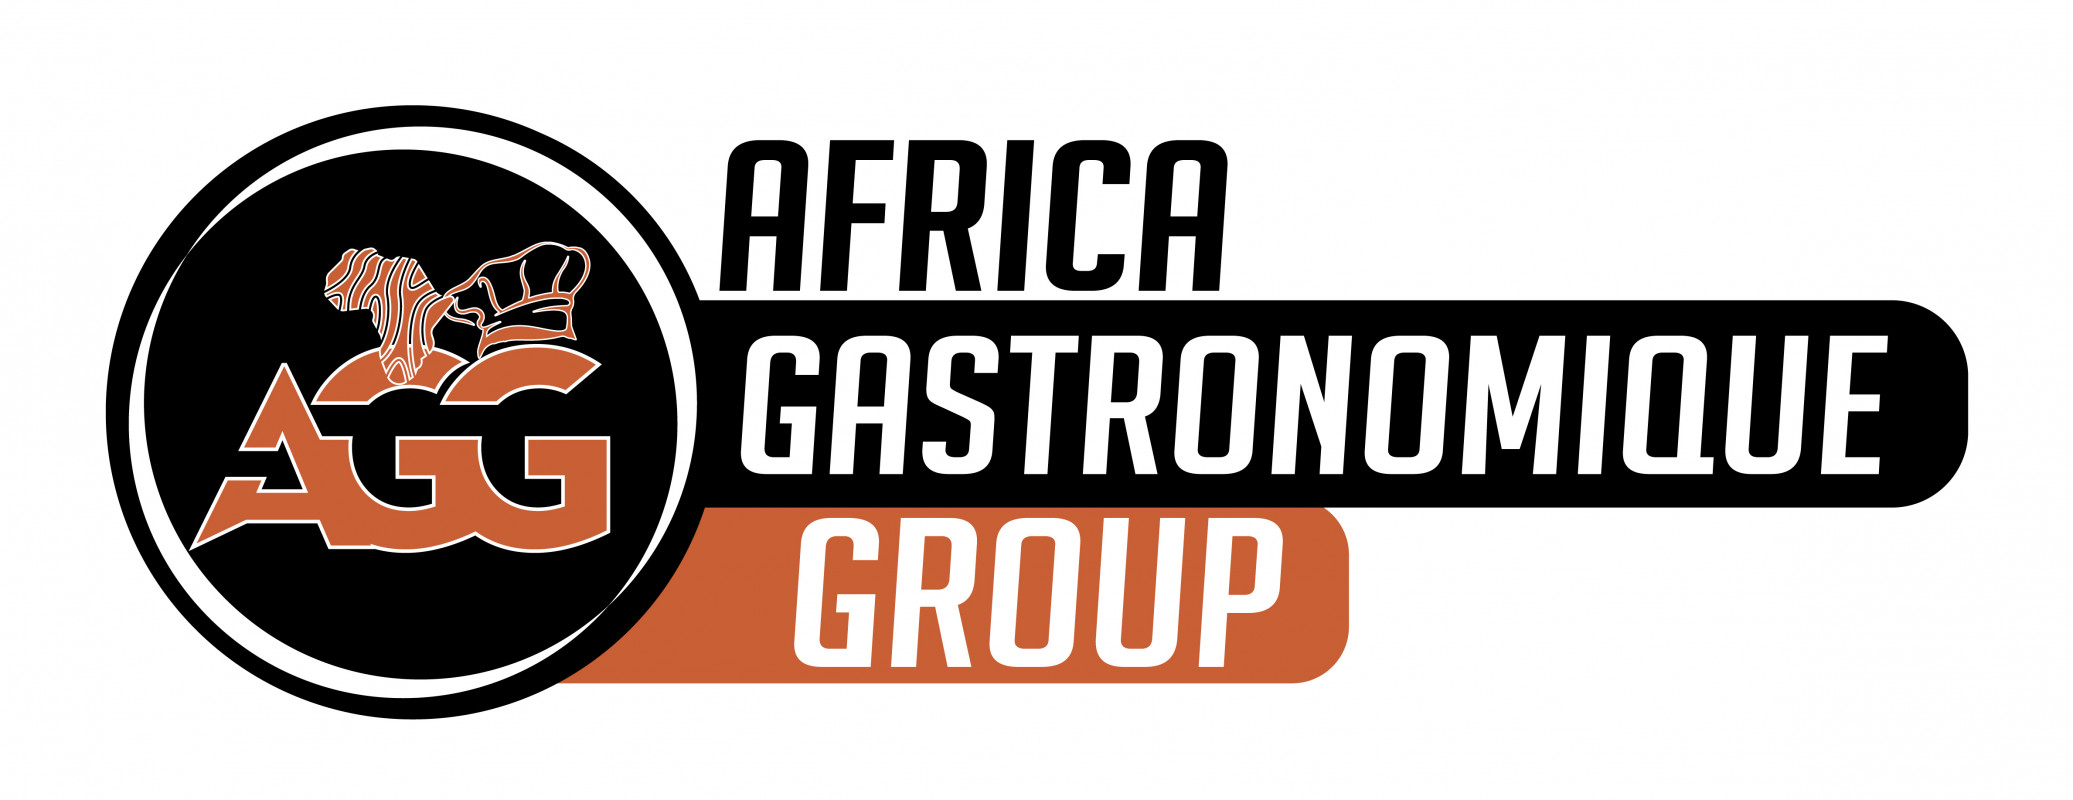 AFRICA GASTRONOMIQUE Logo